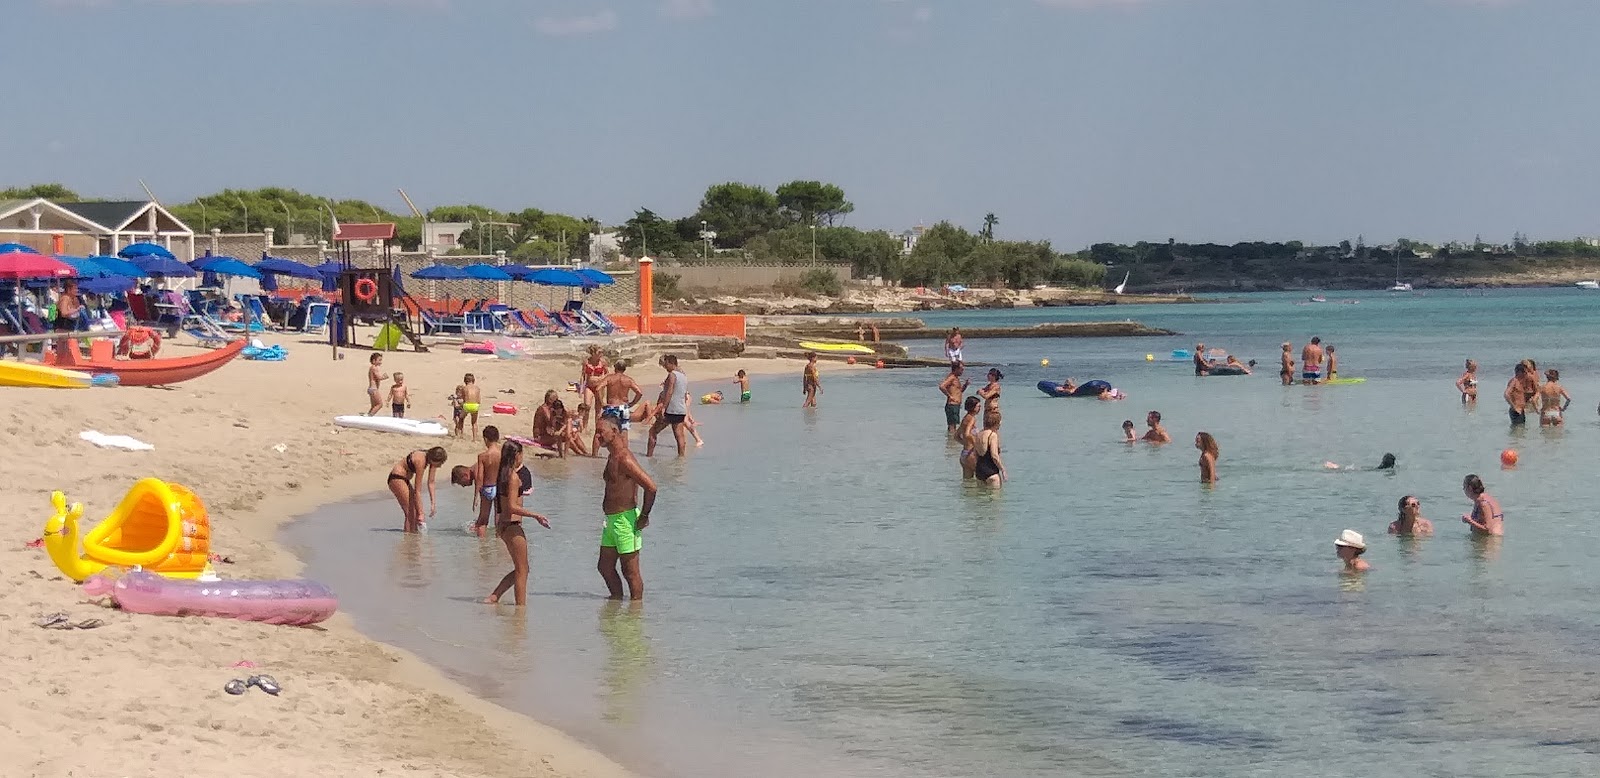 Foto de Spiaggia Ufficiali y el asentamiento